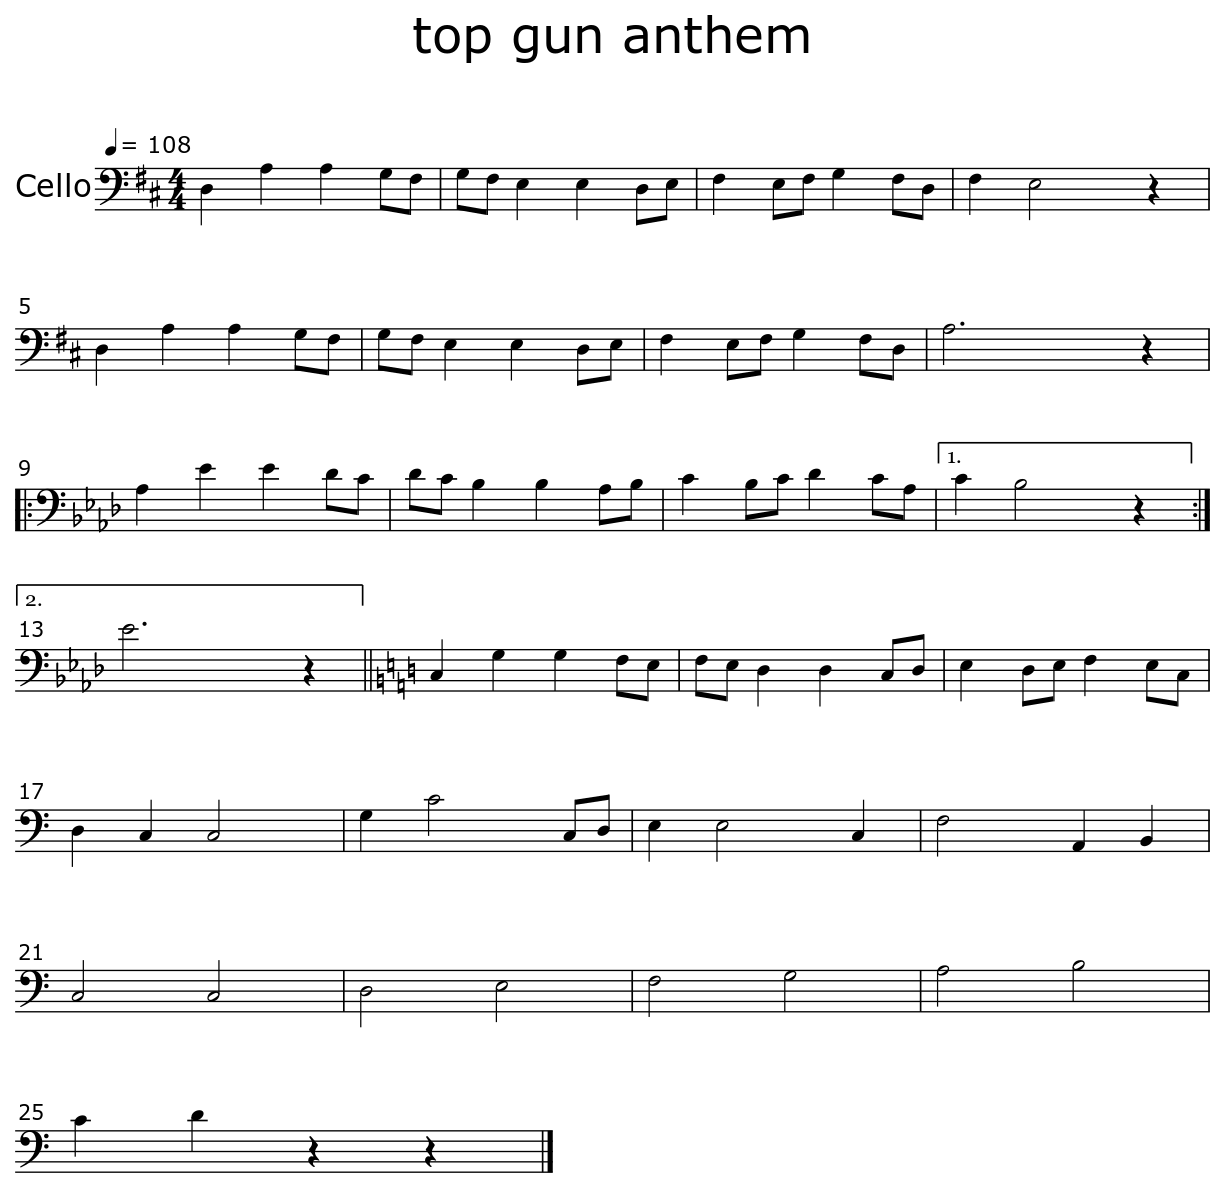 Top Gun Anthem Play-along Backing Tracks